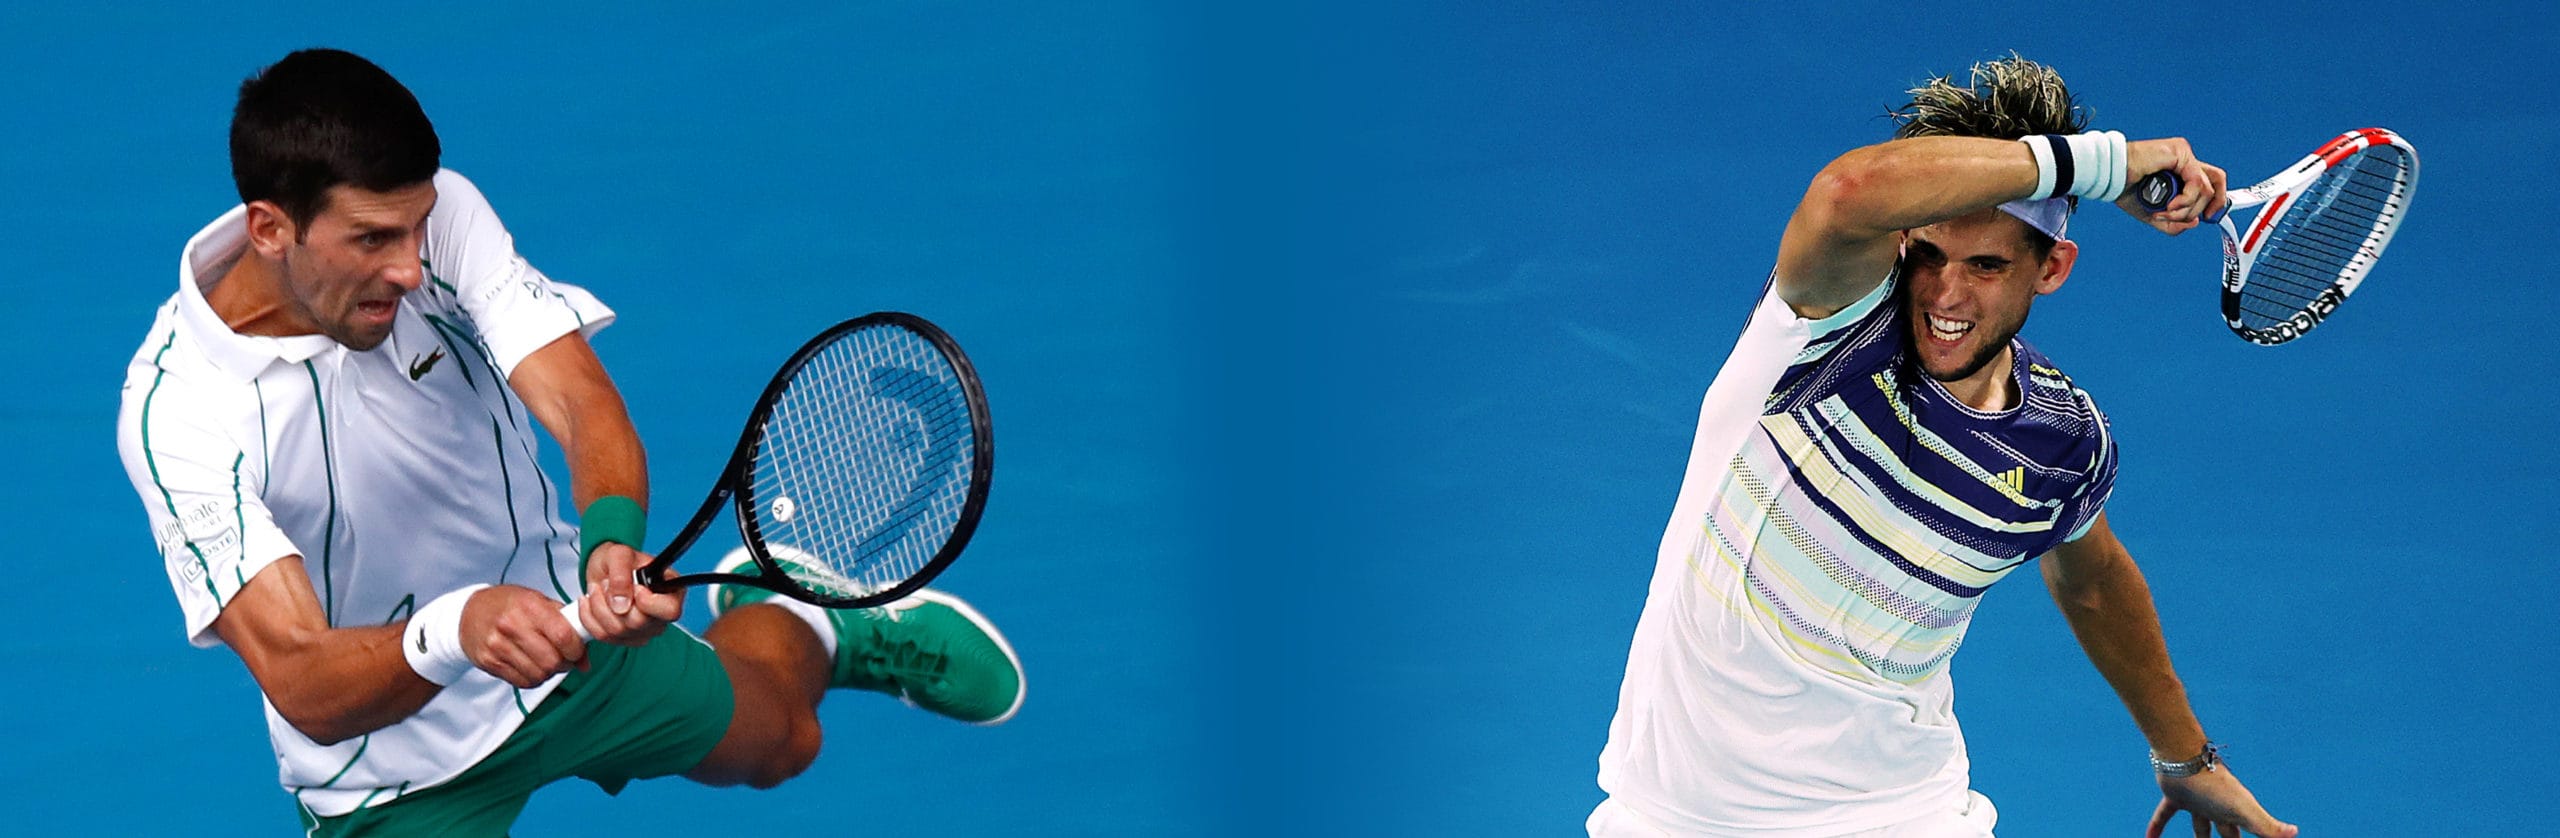 Australian Open, Djokovic-Thiem: pronostico e quote di una finale meno scontata di quanto si pensi